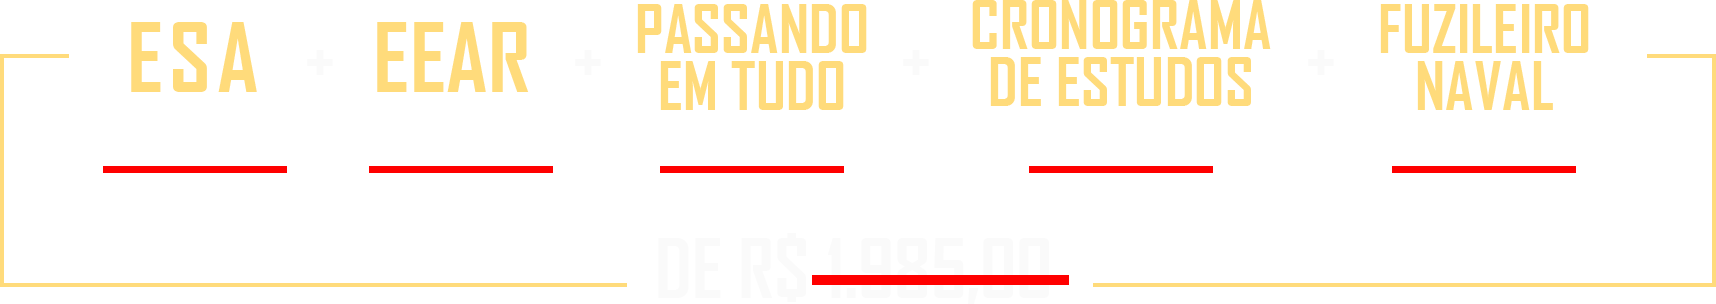 De R$1985,00